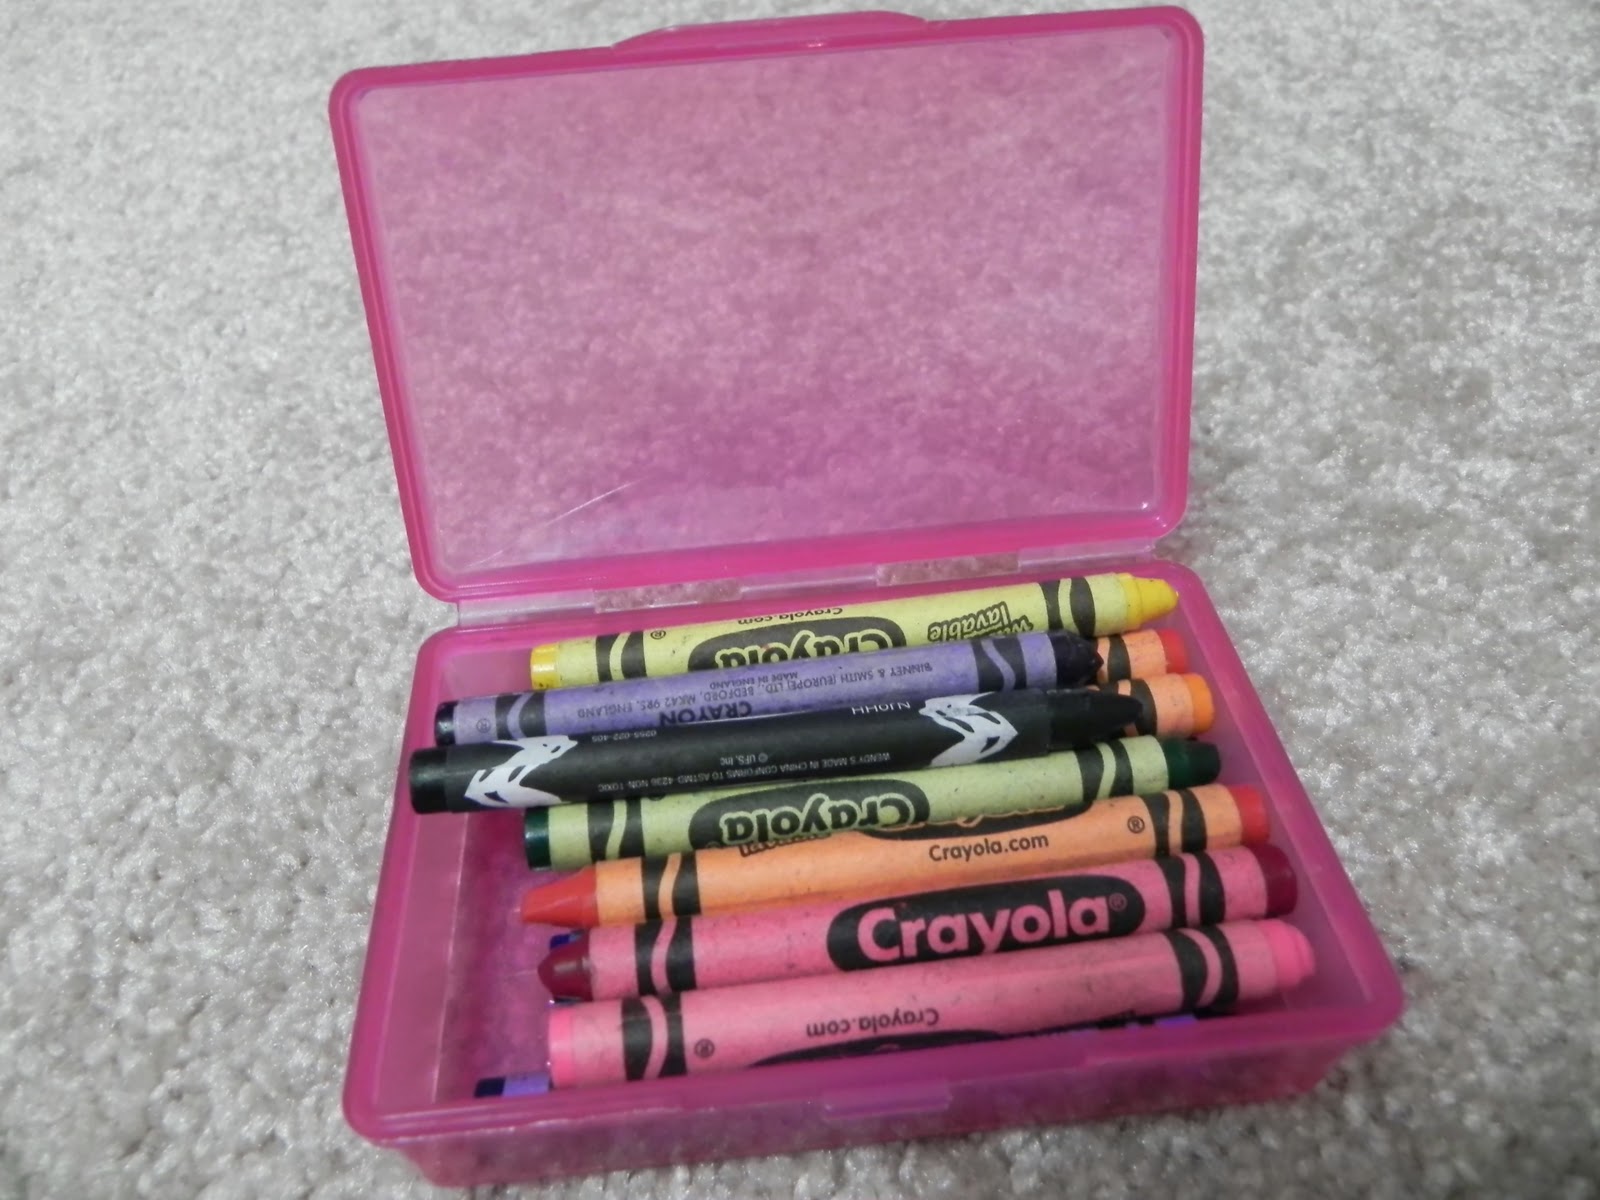 http://2.bp.blogspot.com/-d5odzZ7Ygvc/TZyqT6aw3bI/AAAAAAAAAUg/S9h8OpTAa_o/s1600/crayons+in+box+open.JPG